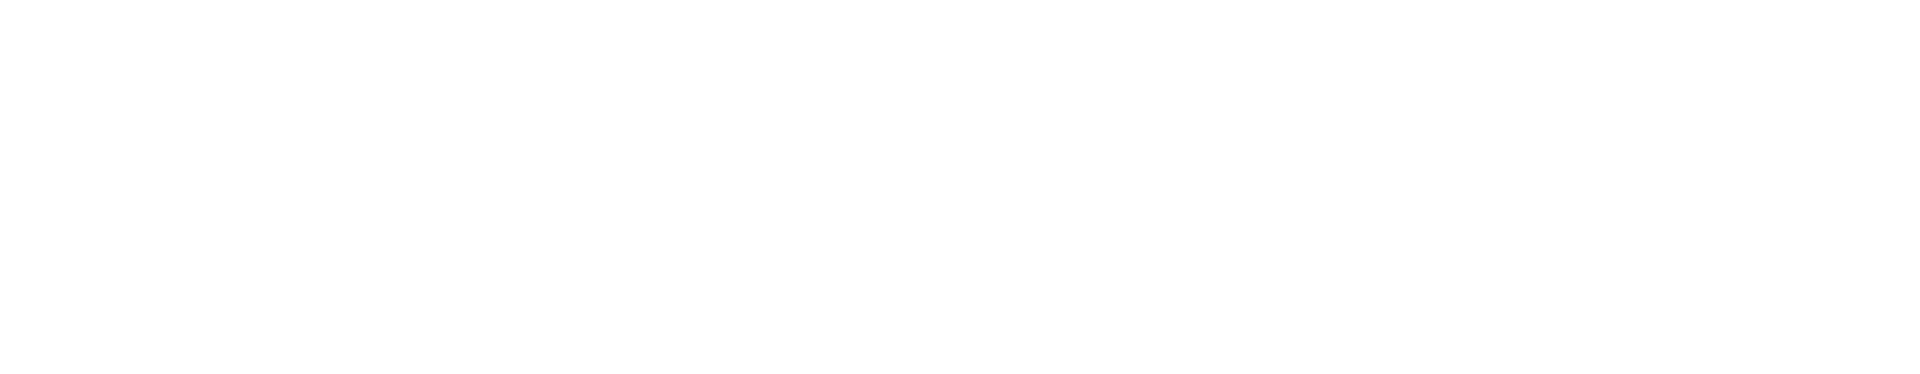 Logo Fritz Müller - versão branca